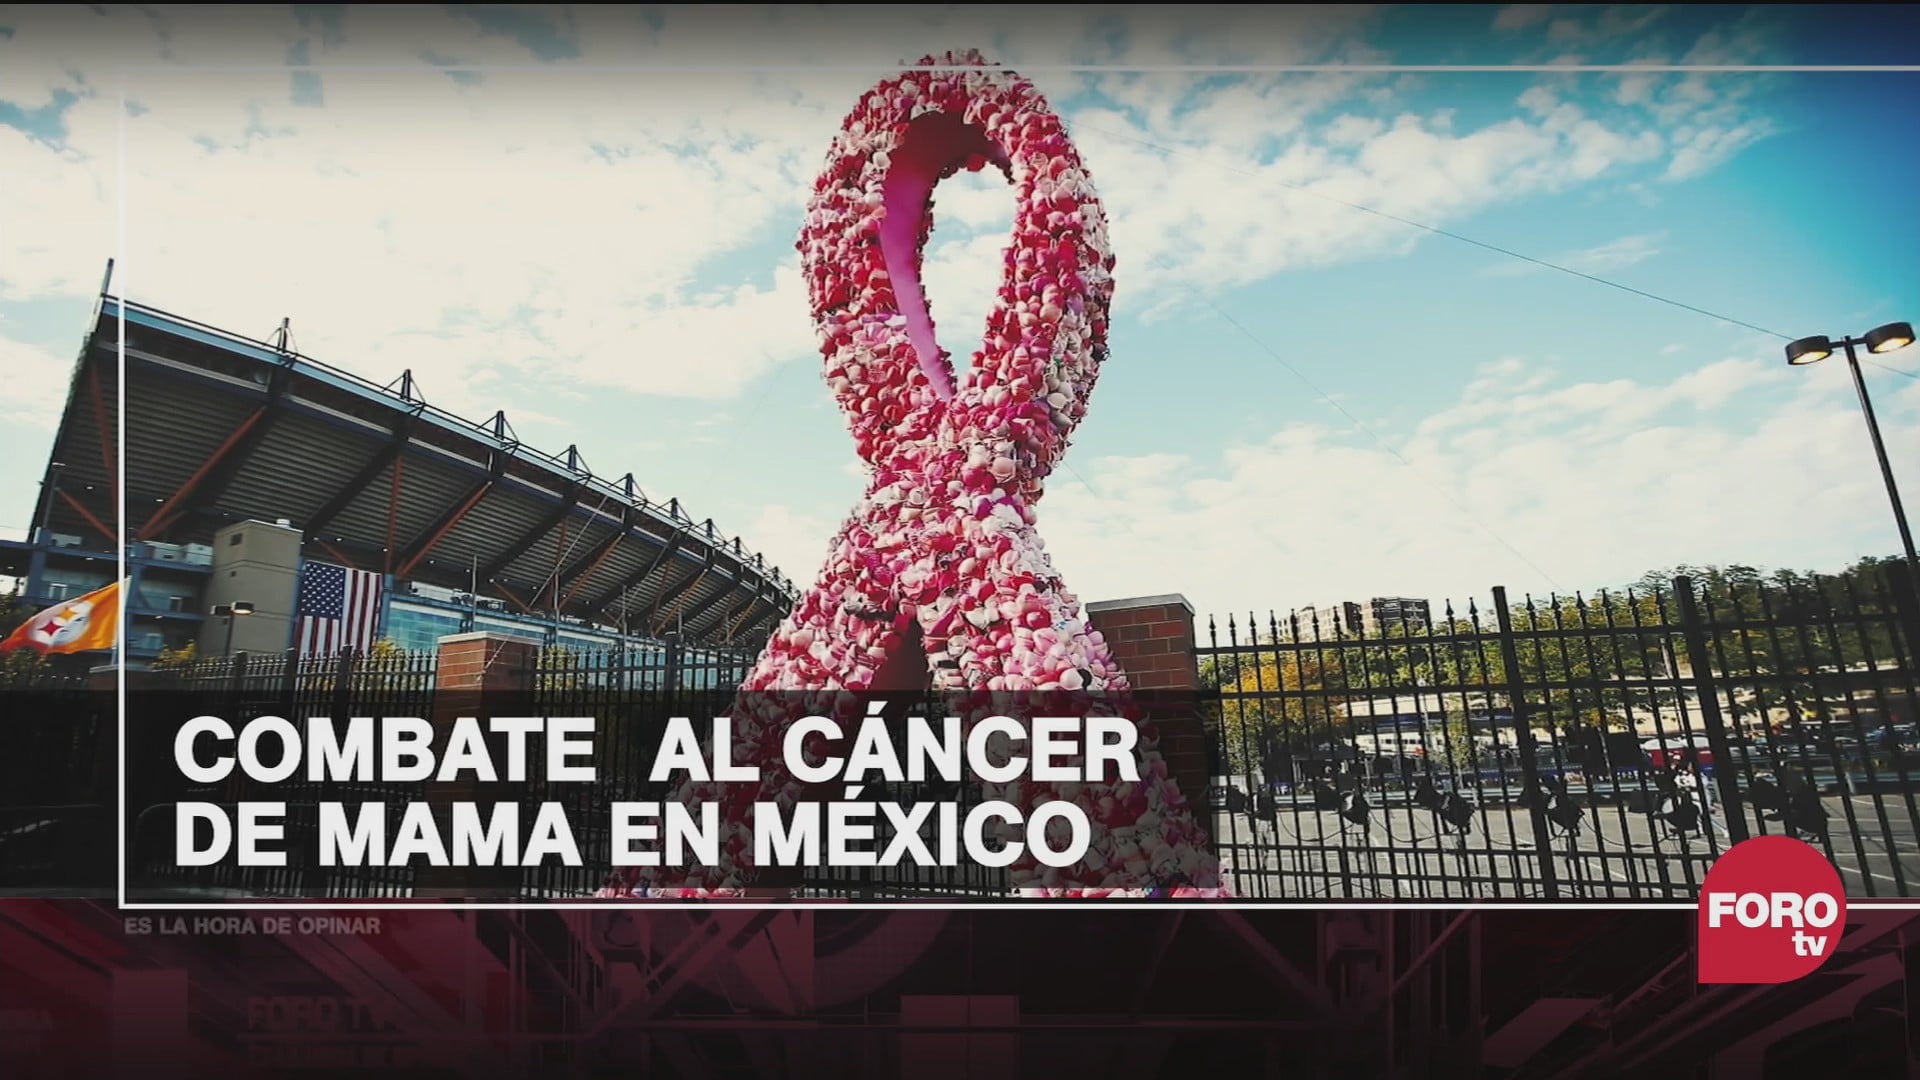 1 de cada 7 mujeres va a desarrollar cancer de mama en mexico